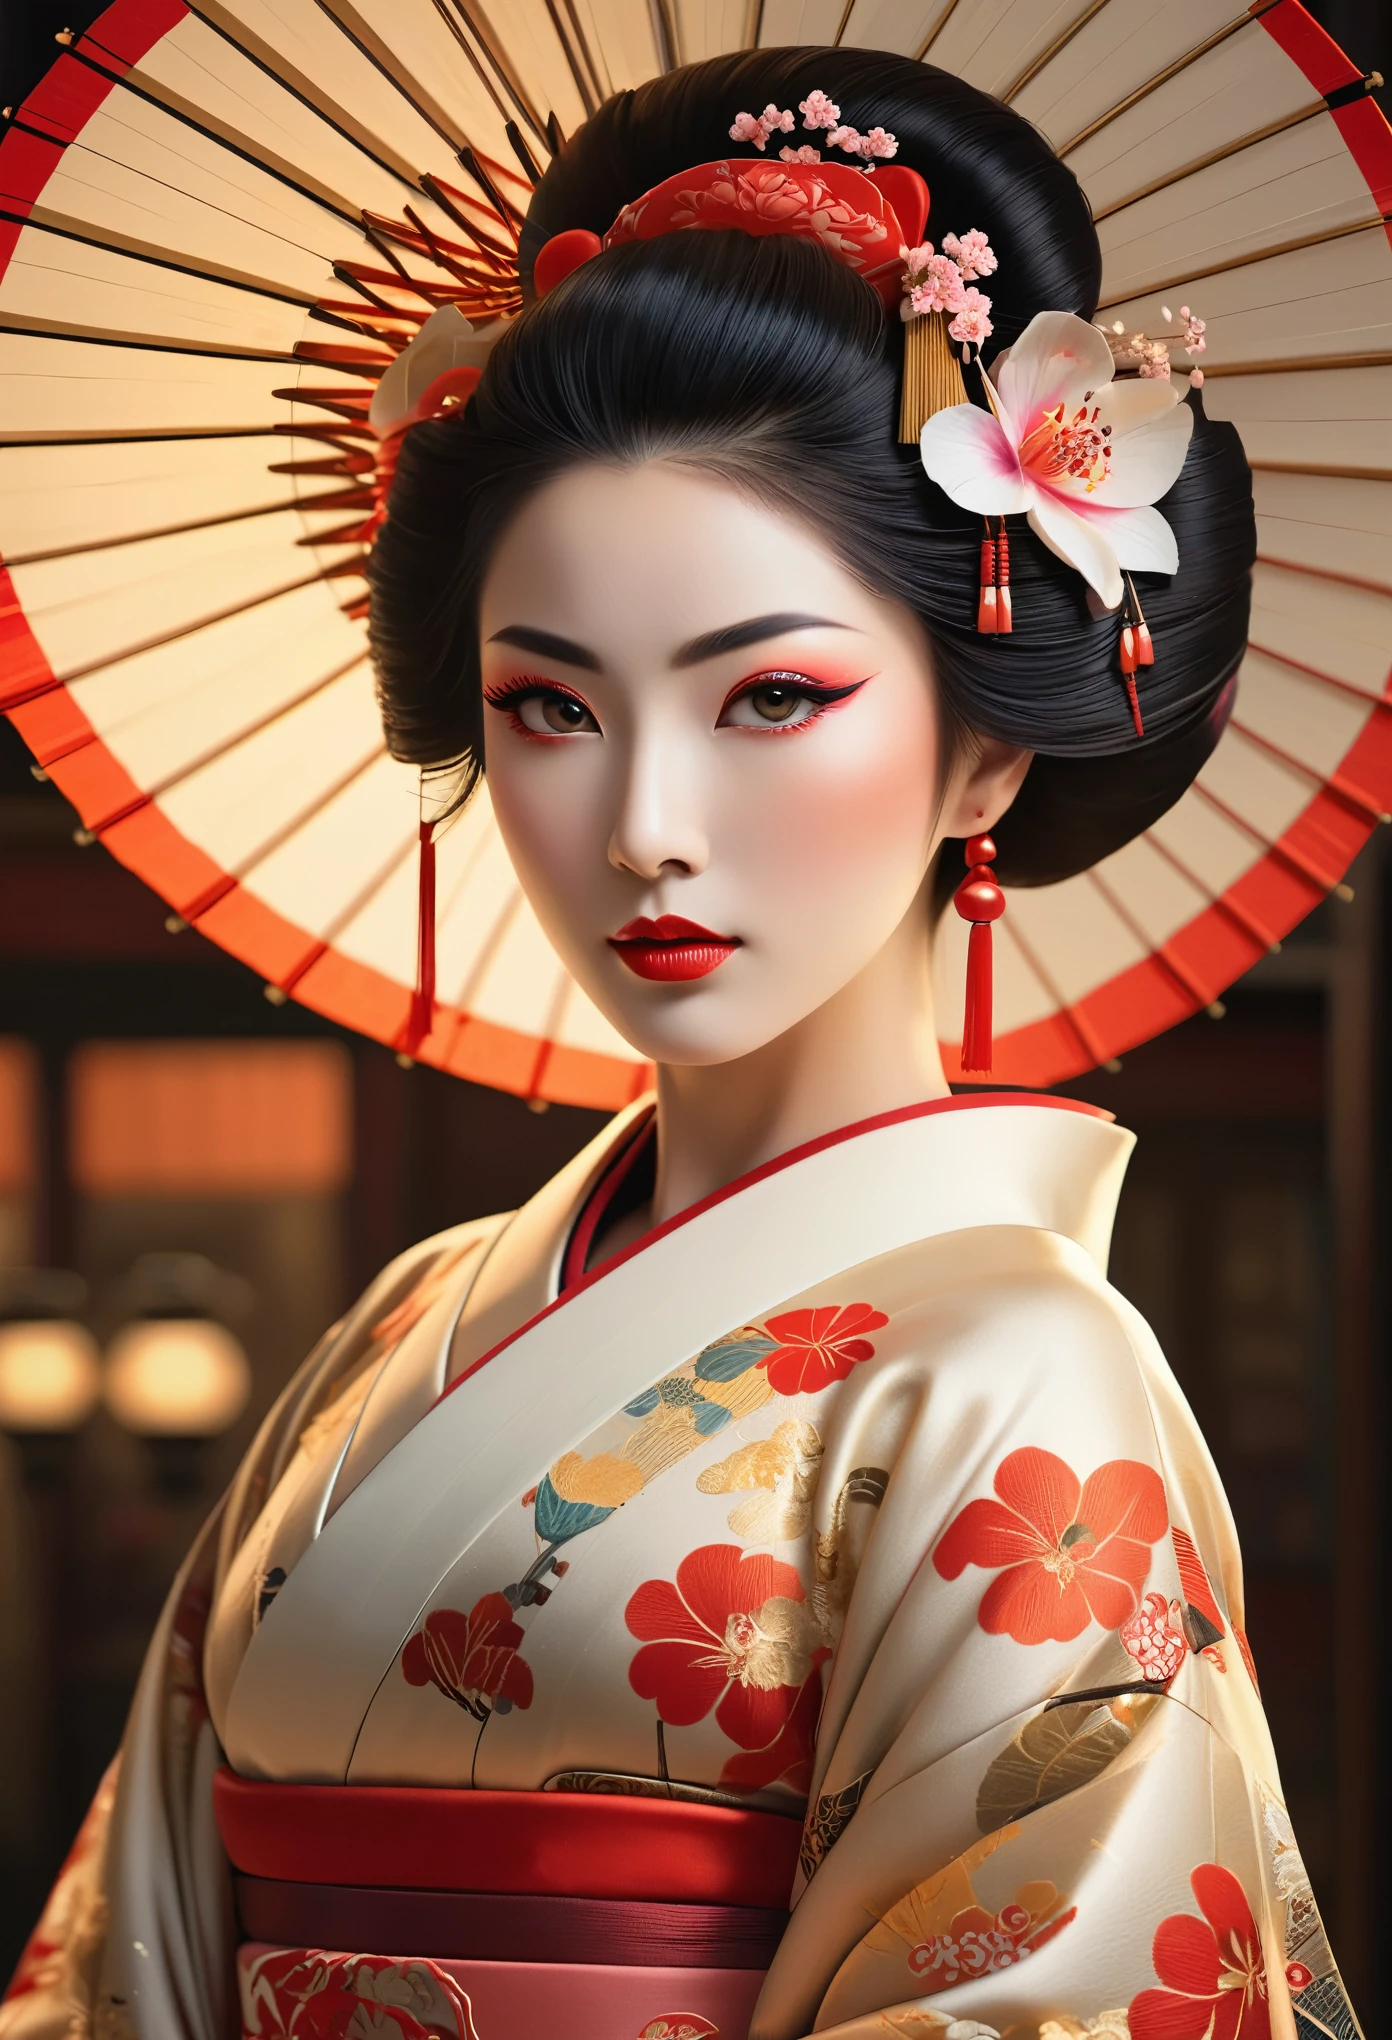 Un retrato muy detallado de cuerpo entero de una geisha., Representación de octanaje intrincada e hiperdetallada., pose simétrica, hermosos ojos detallados, hermosos labios detallados, cara y piel extremadamente detalladas, Pestañas largas, elegant kimono, peinado tradicional, rasgos faciales delicados, expresión serena, iluminación dramática, paleta de colores cálidos, composición cinematográfica, obra maestra, Fotorrealista, (Es mitad francesa, y es una belleza deslumbrante con ojos detallados y una nariz alta.:1.6), cejas gruesas, rasgos faciales detallados, cuello largo y elegante, 